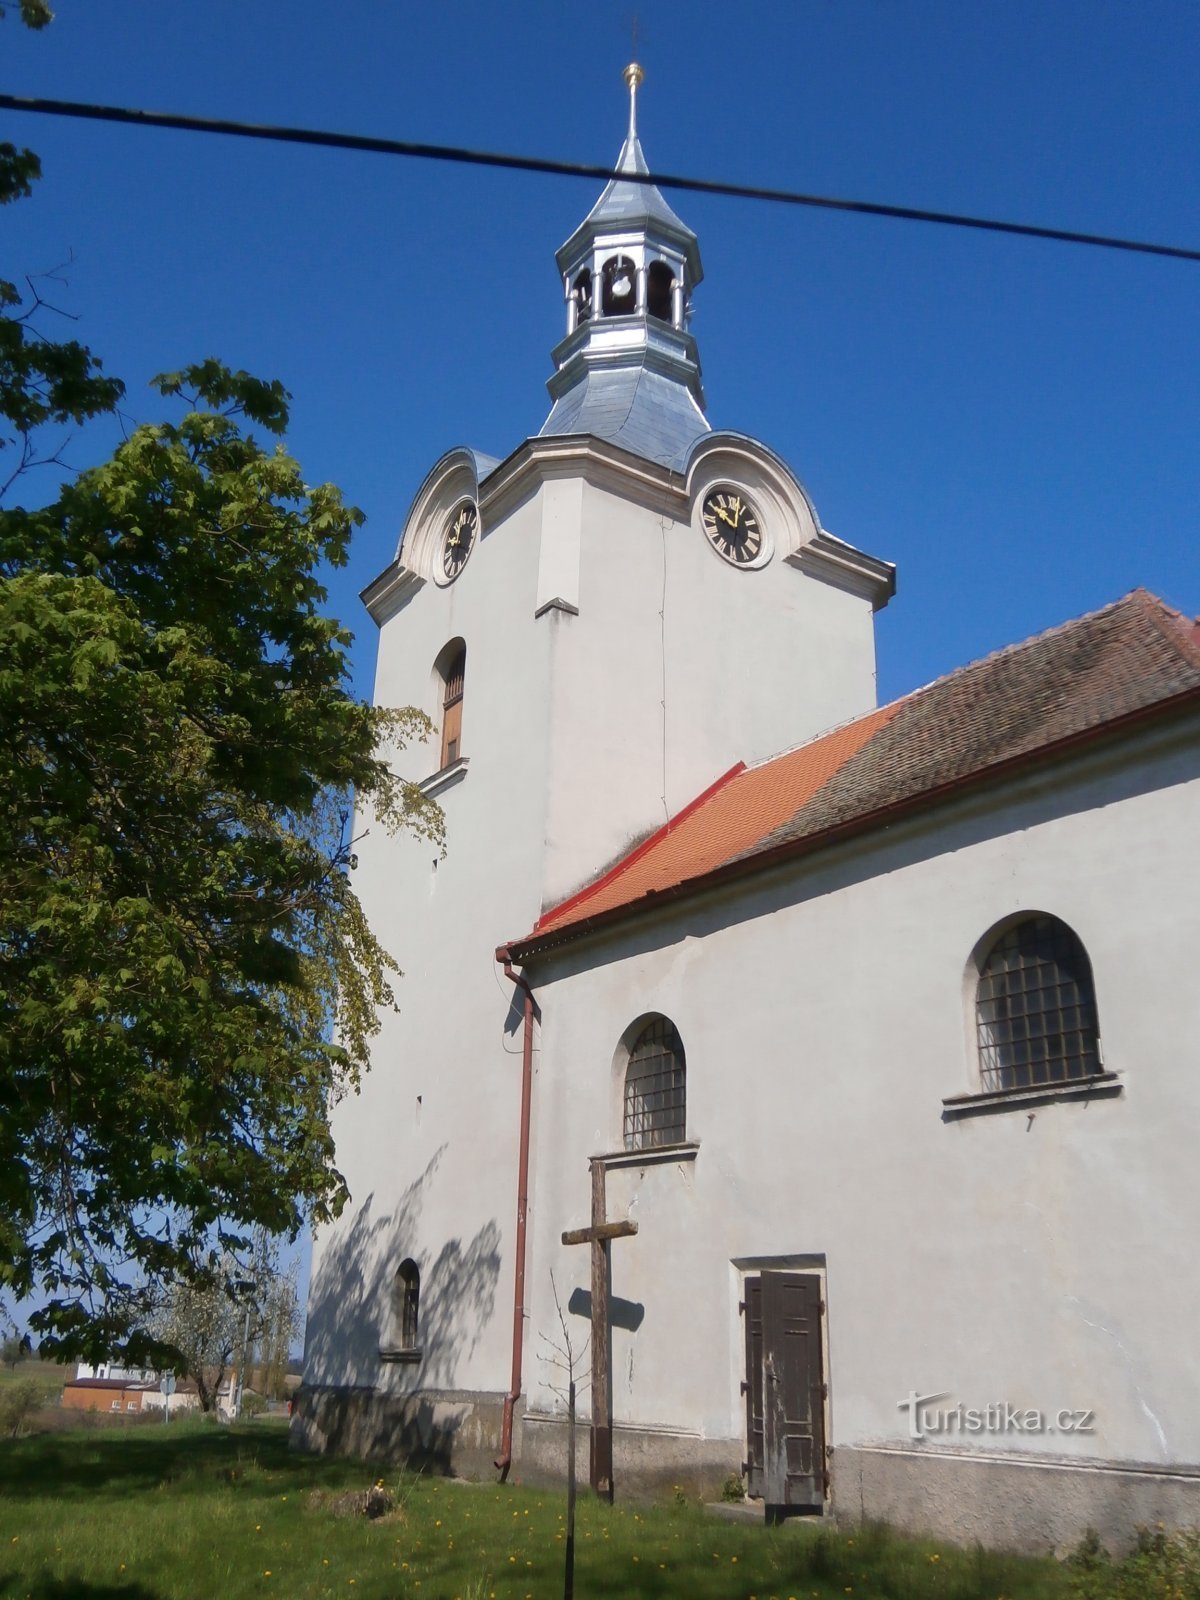 Cerkev sv. Vaclav (Číbuz)